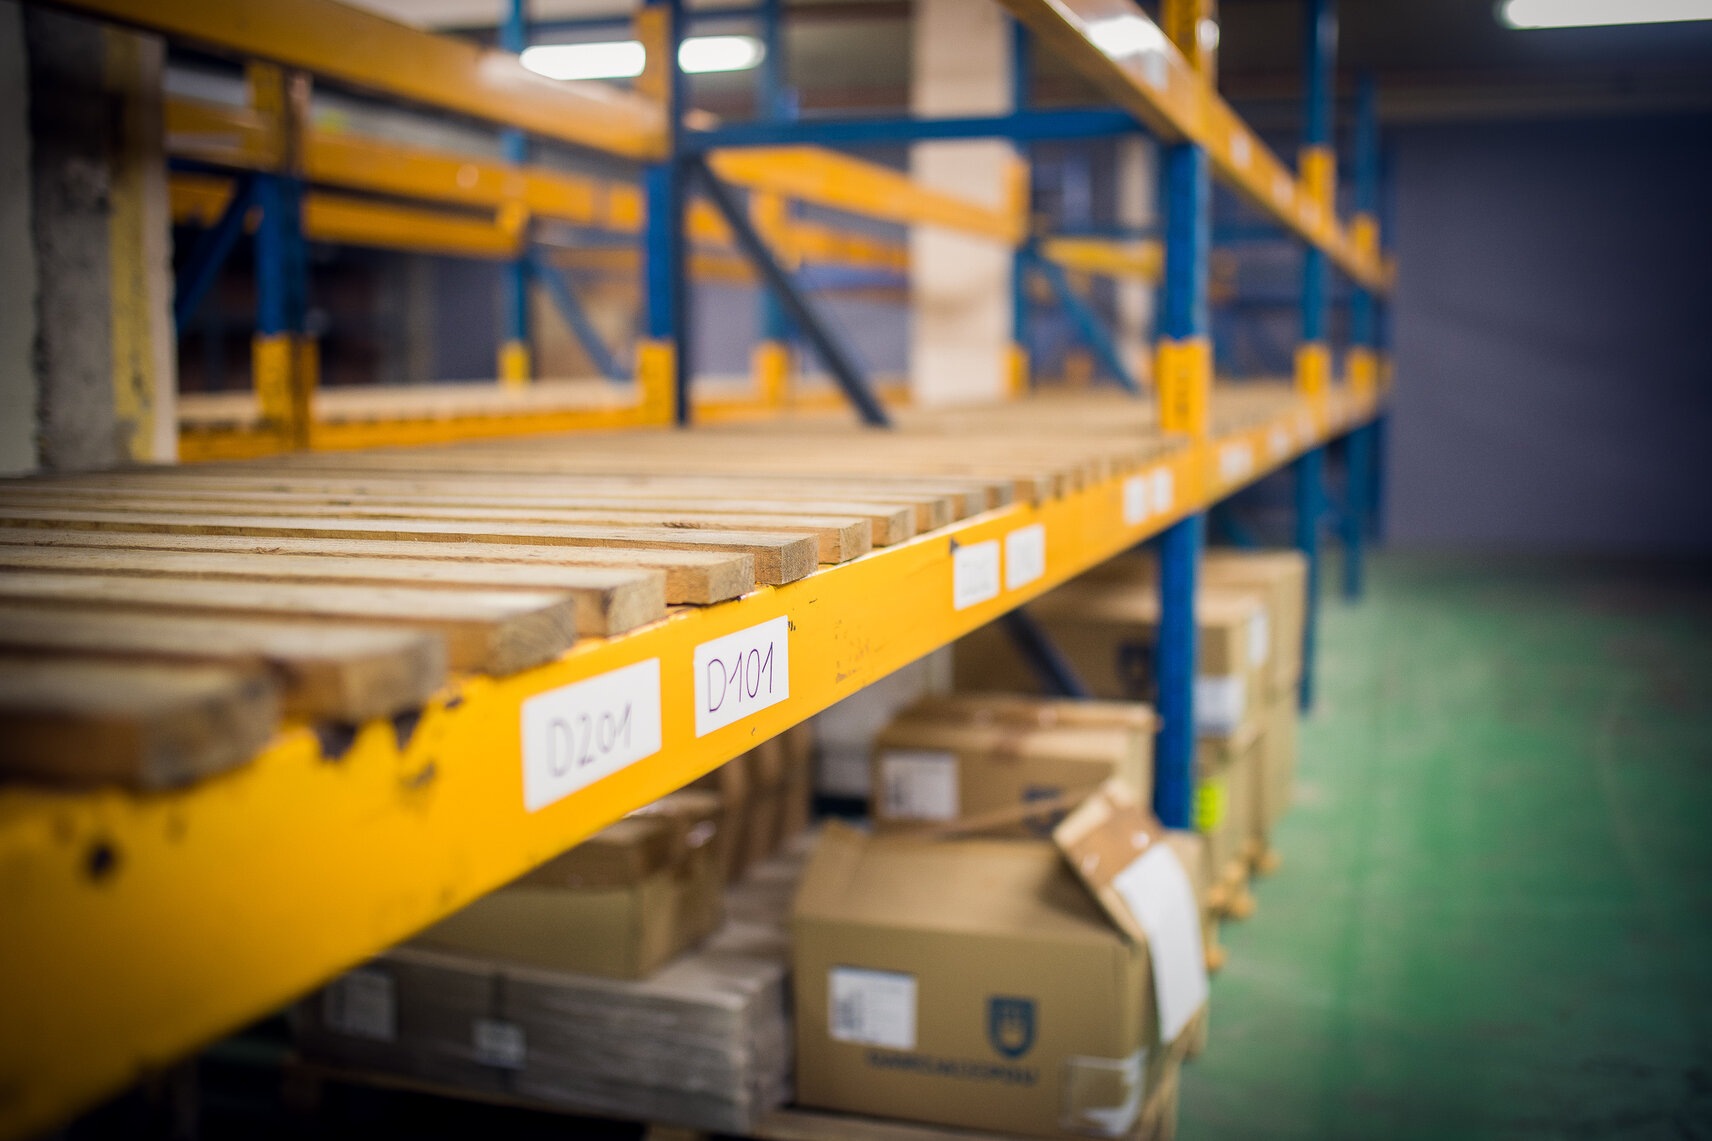 Le centre de self-stockage Nordbox propose des solutions de stockage logistique dans son entrepôt sécurisé pour les entreprises à Tourcoing, près de la Promenade de Flandre et de Lille.